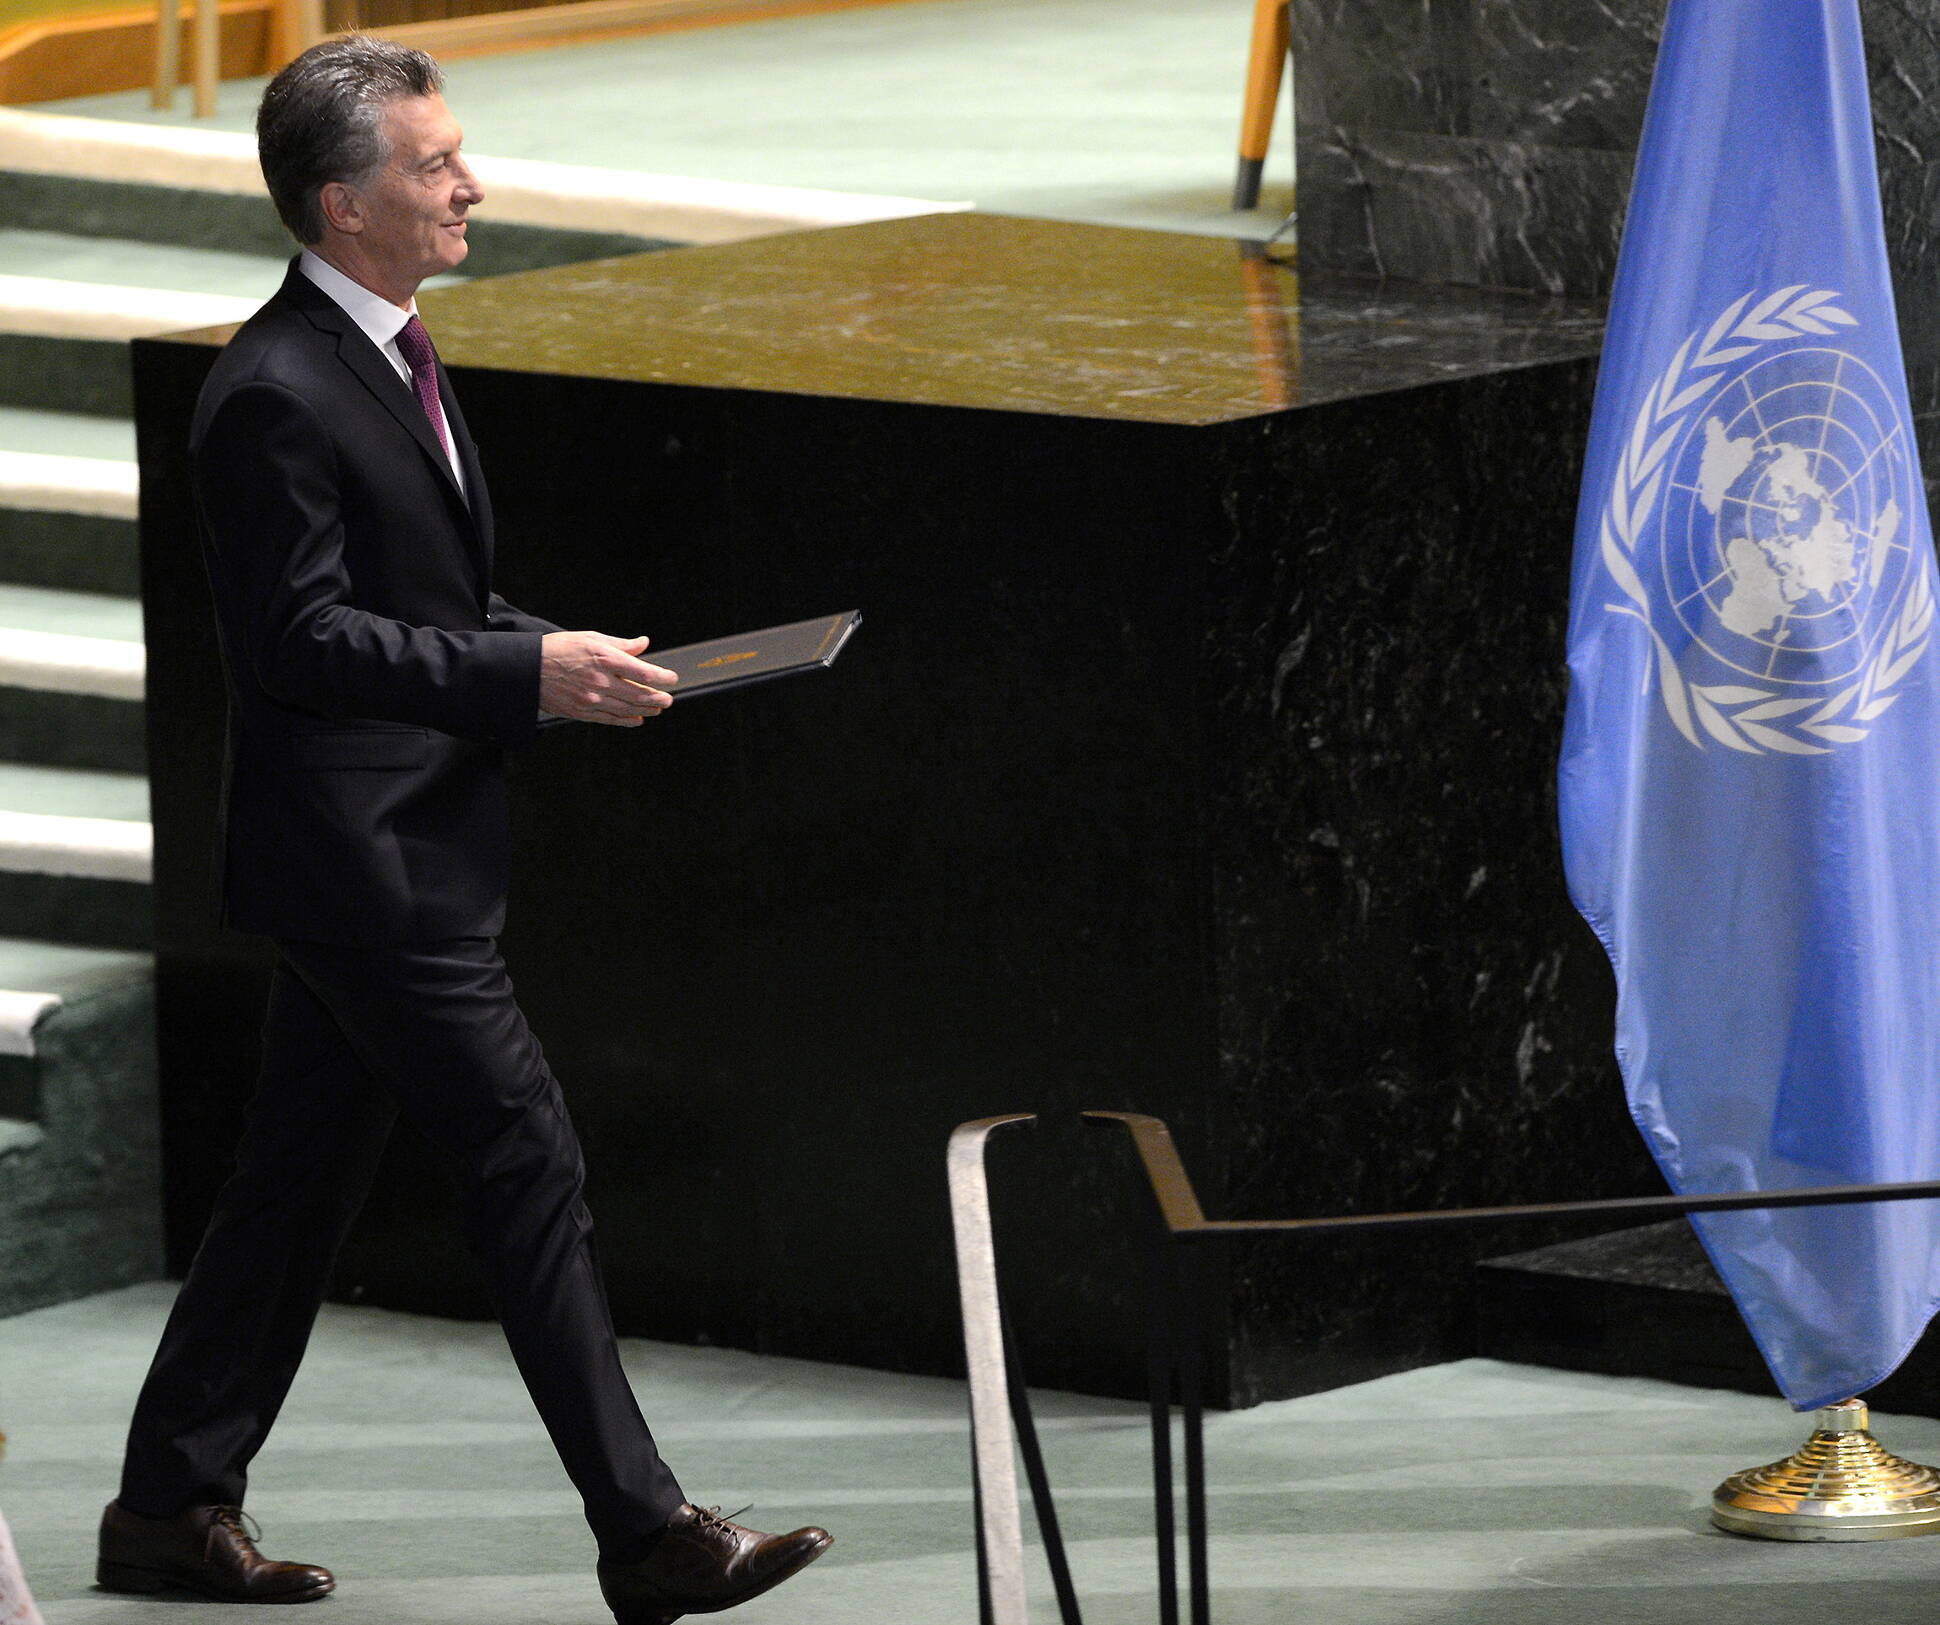 El presidente Macri entregó ante la ONU la adhesión argentina al Acuerdo de París 